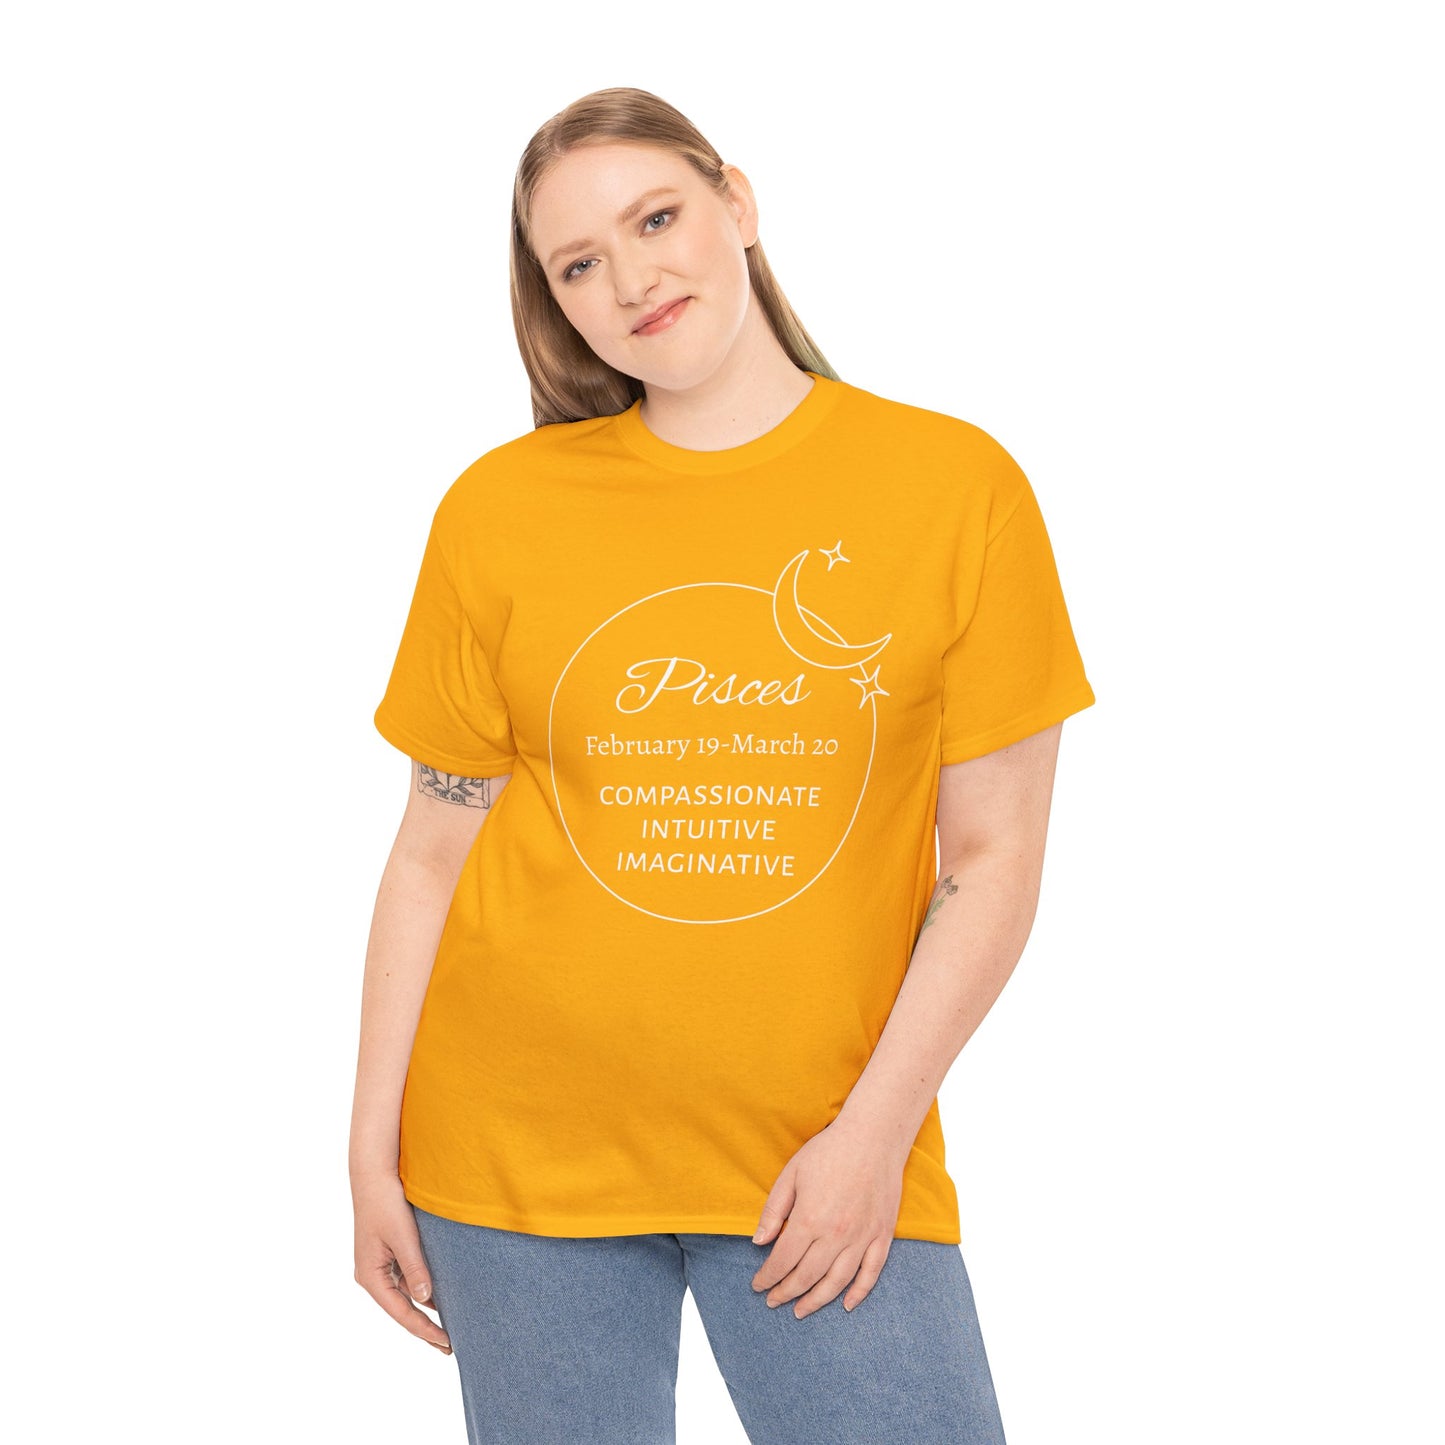 Pisces traits t-shirt